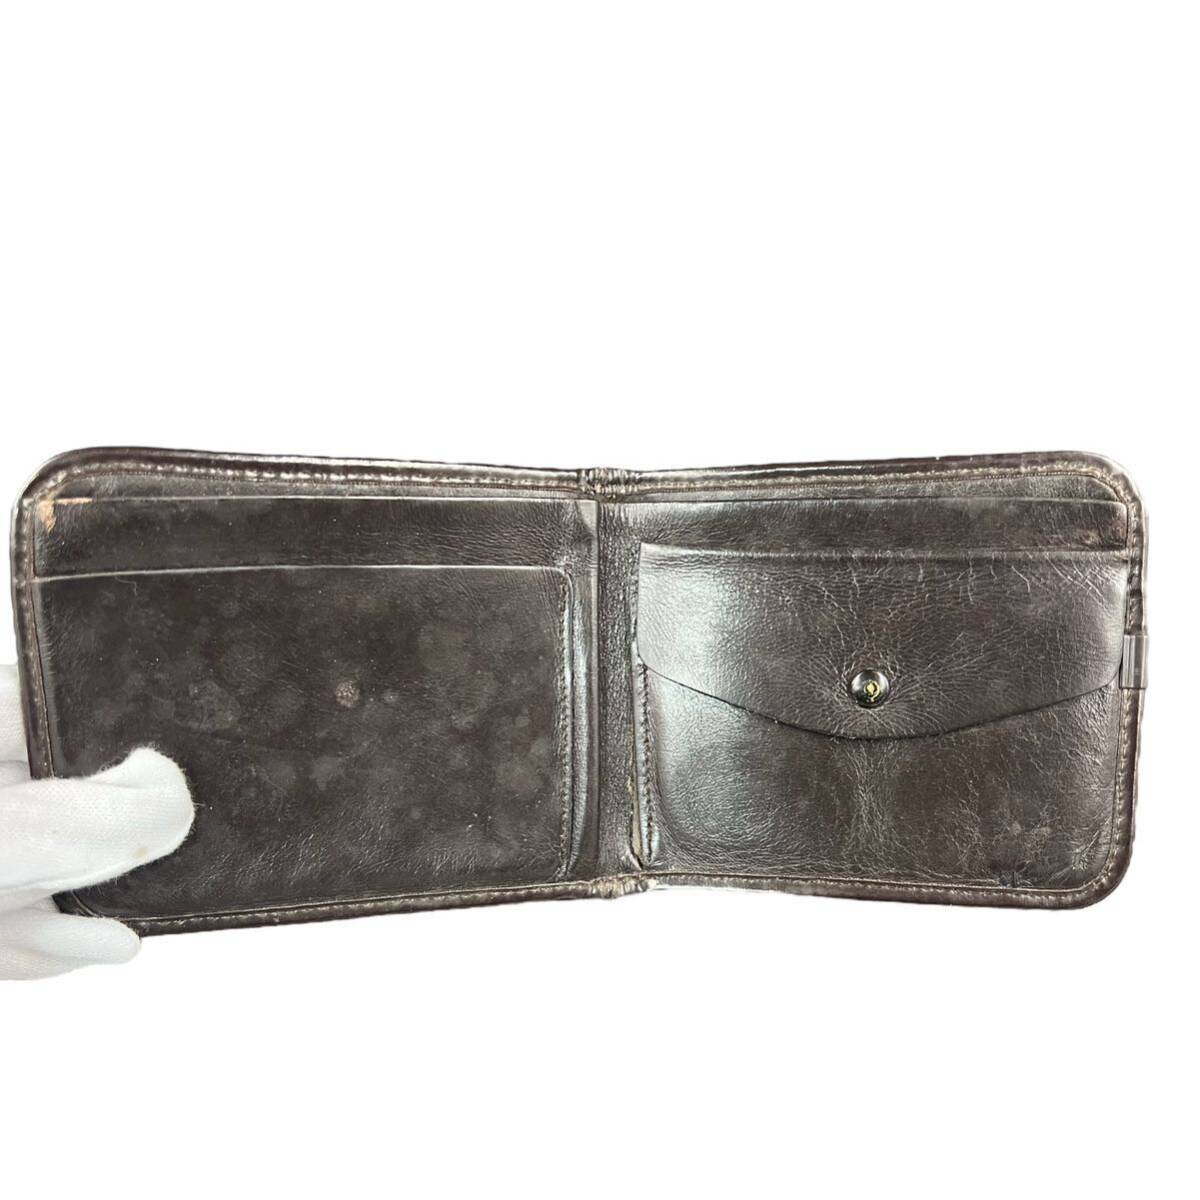 【KF1020】Christian Dior ディオール トロッター柄 二つ折り財布 財布 ブラウンの画像4